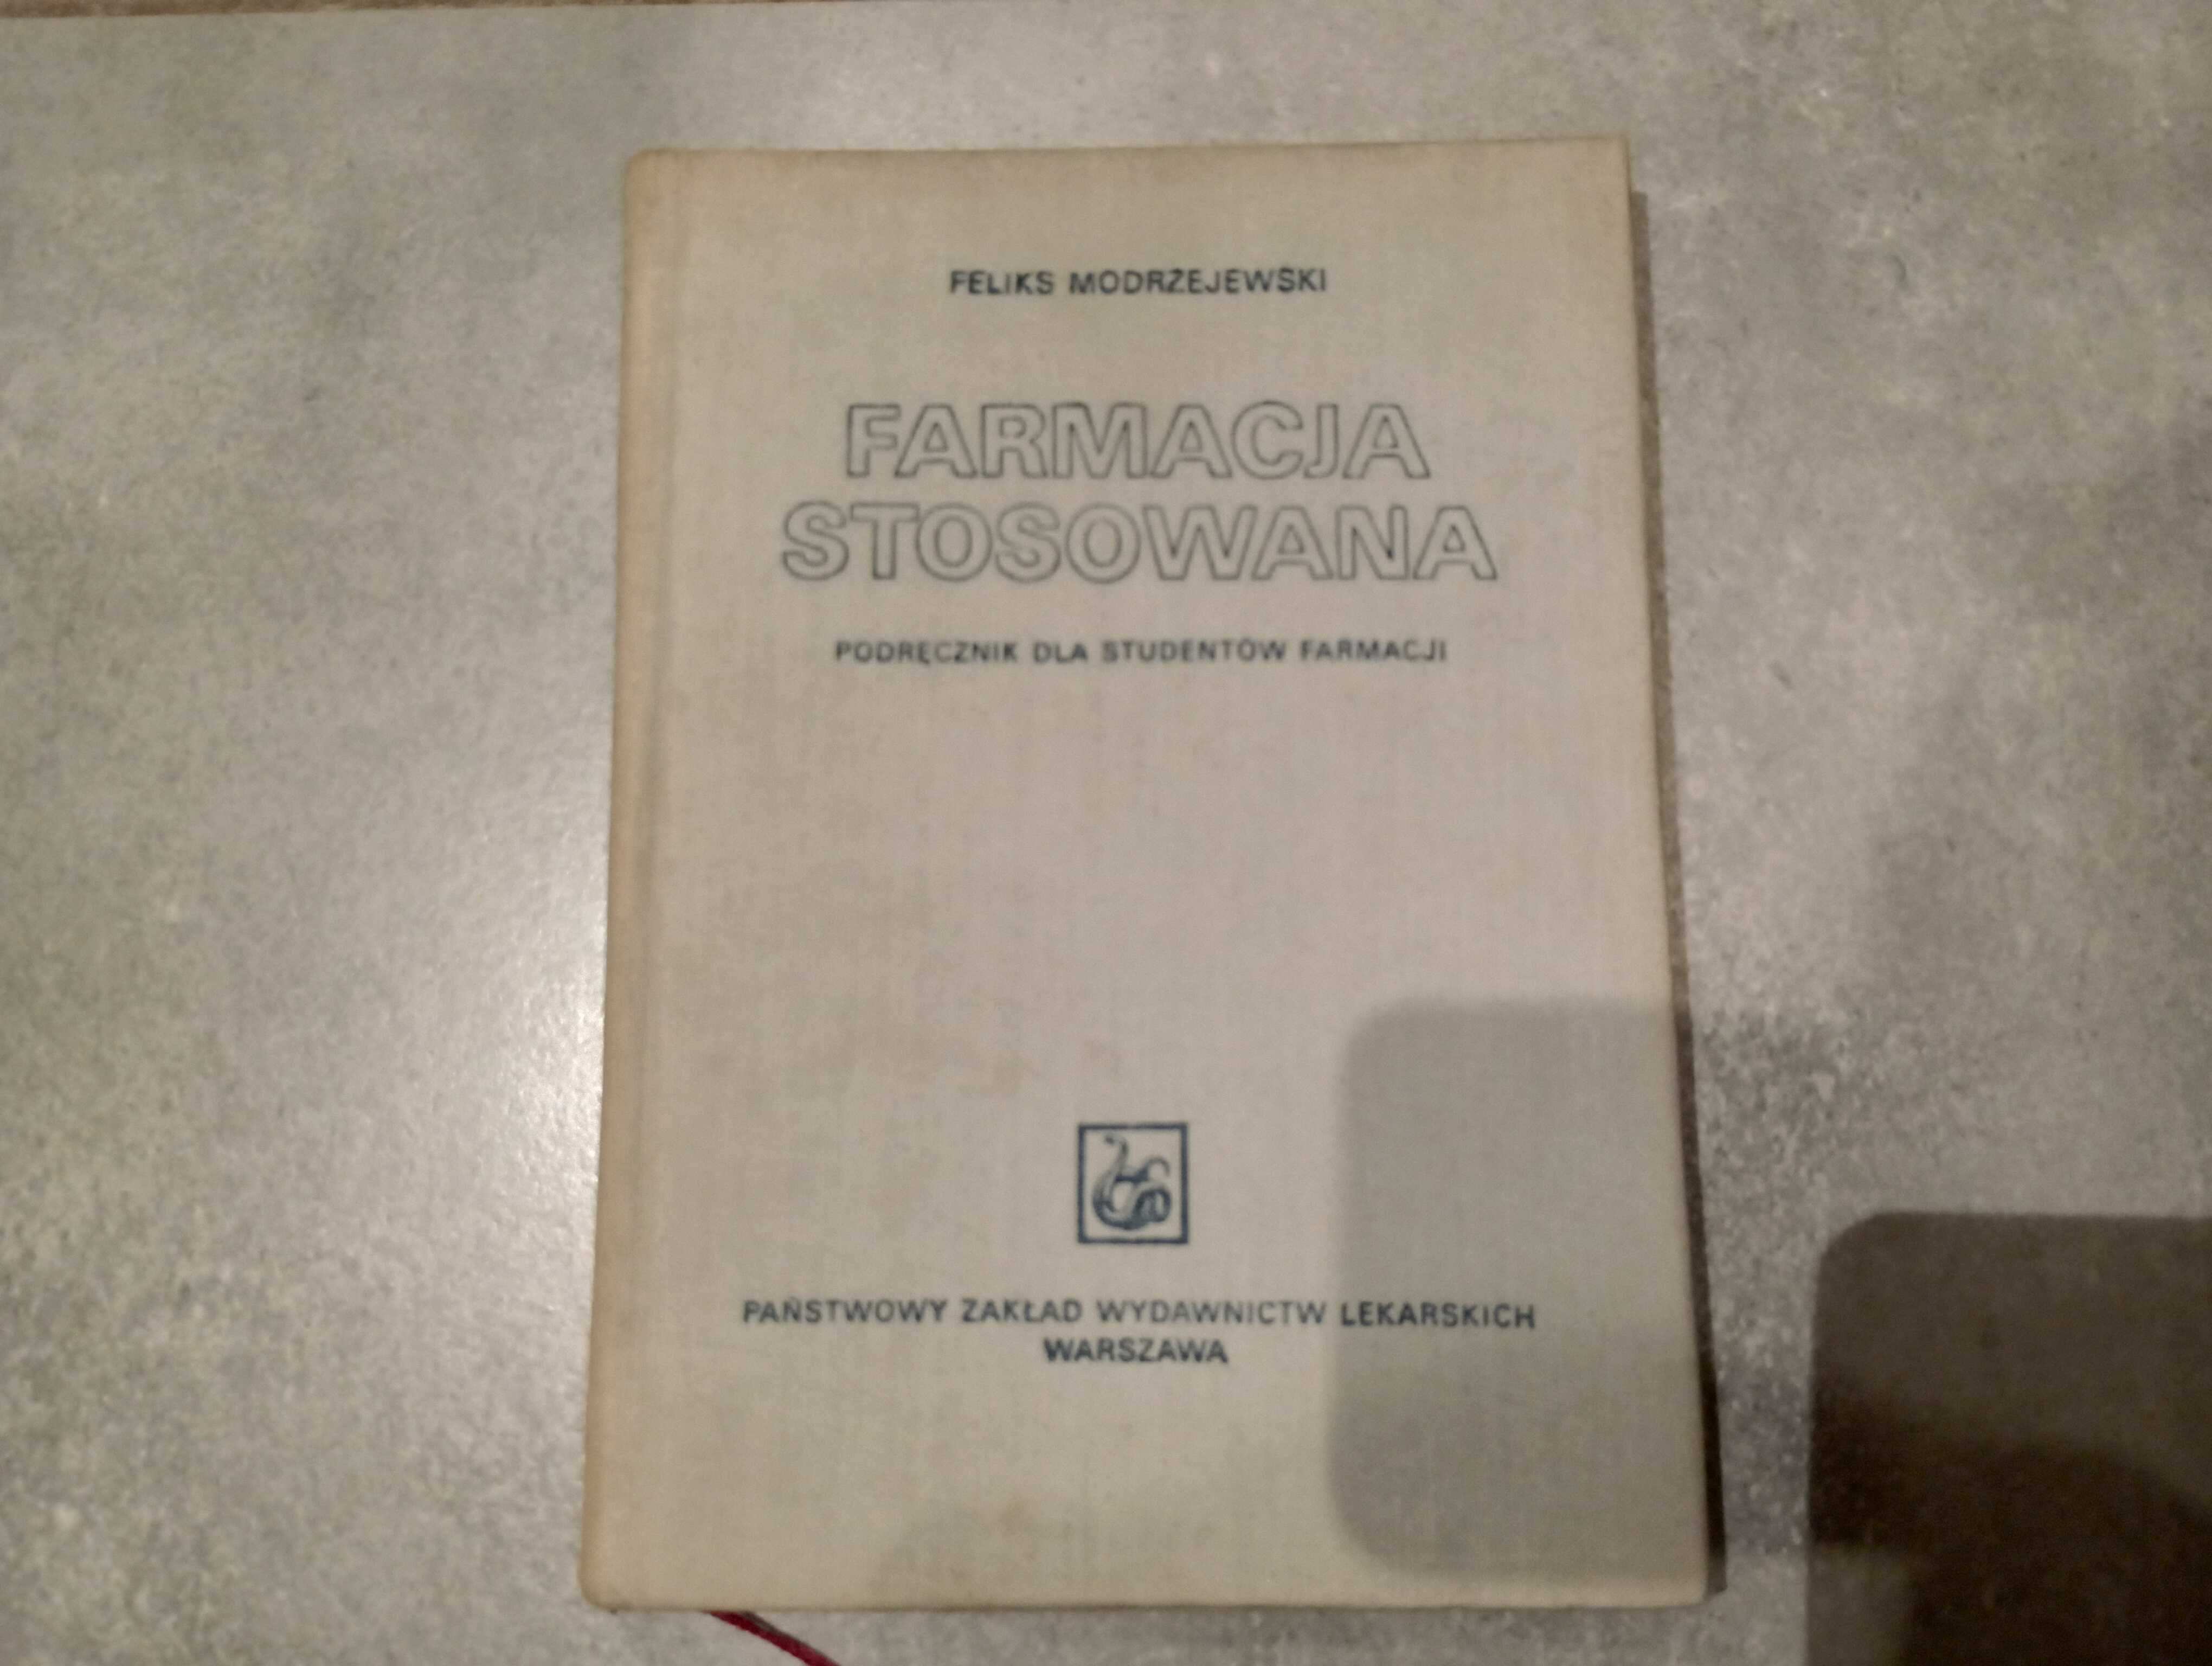 FARMACJA STOSOWANA Feliks Modrzejewski Wyd.1977. FARMACJA podręcznik.